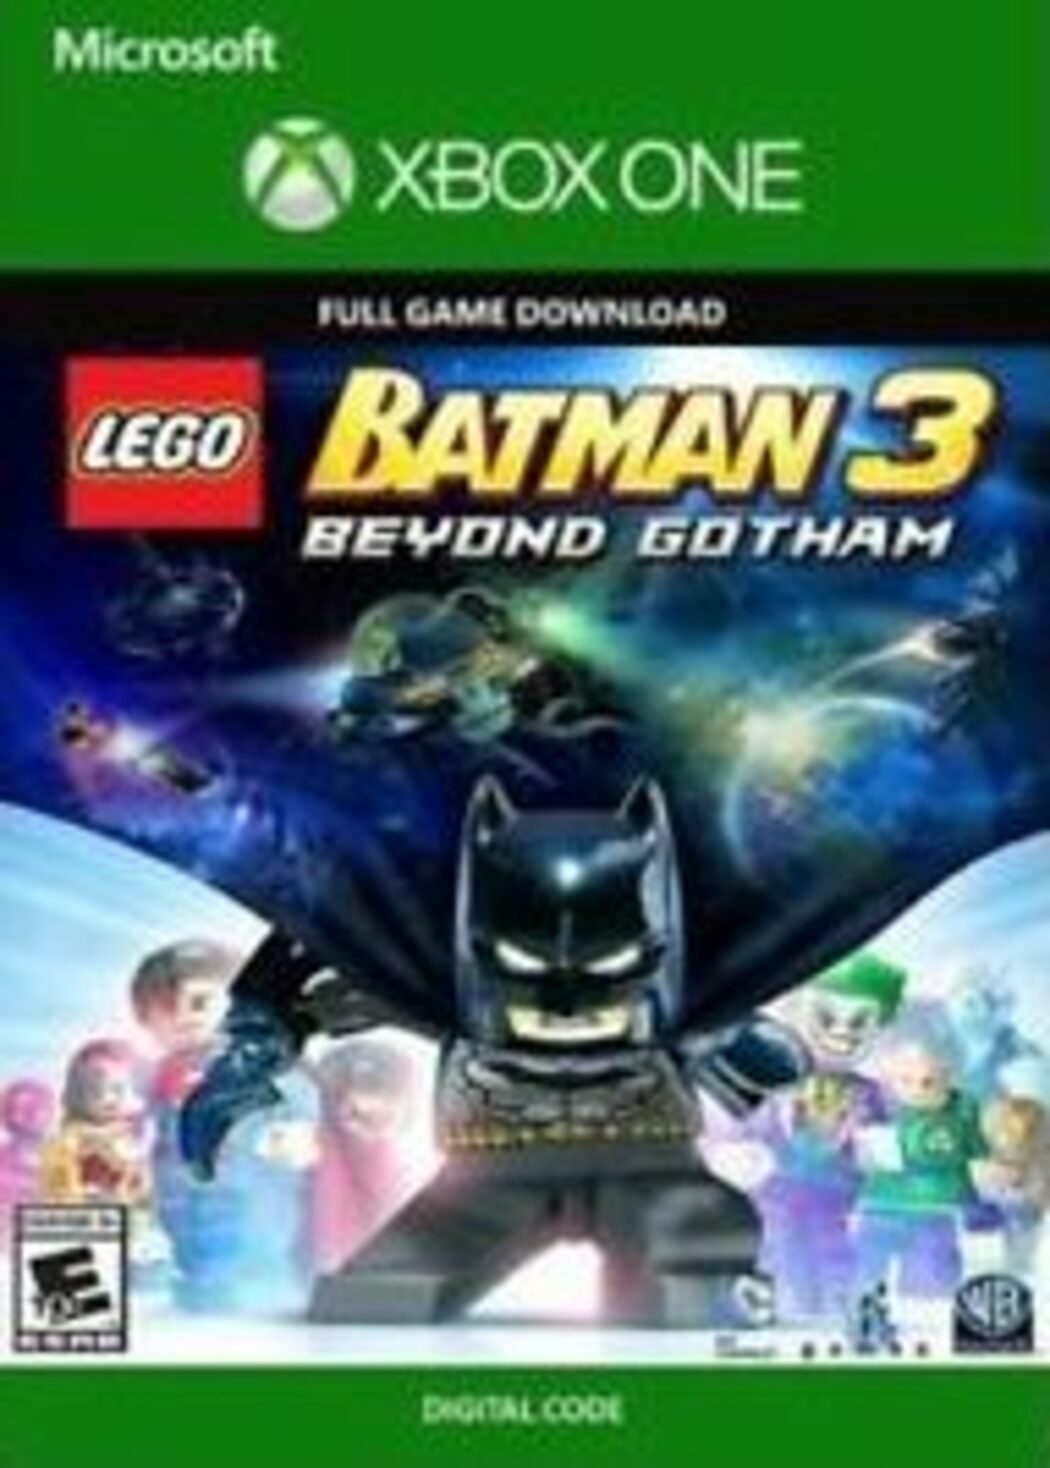 LEGO Batman 3: Beyond Gotham Steam Key for PC - Buy now